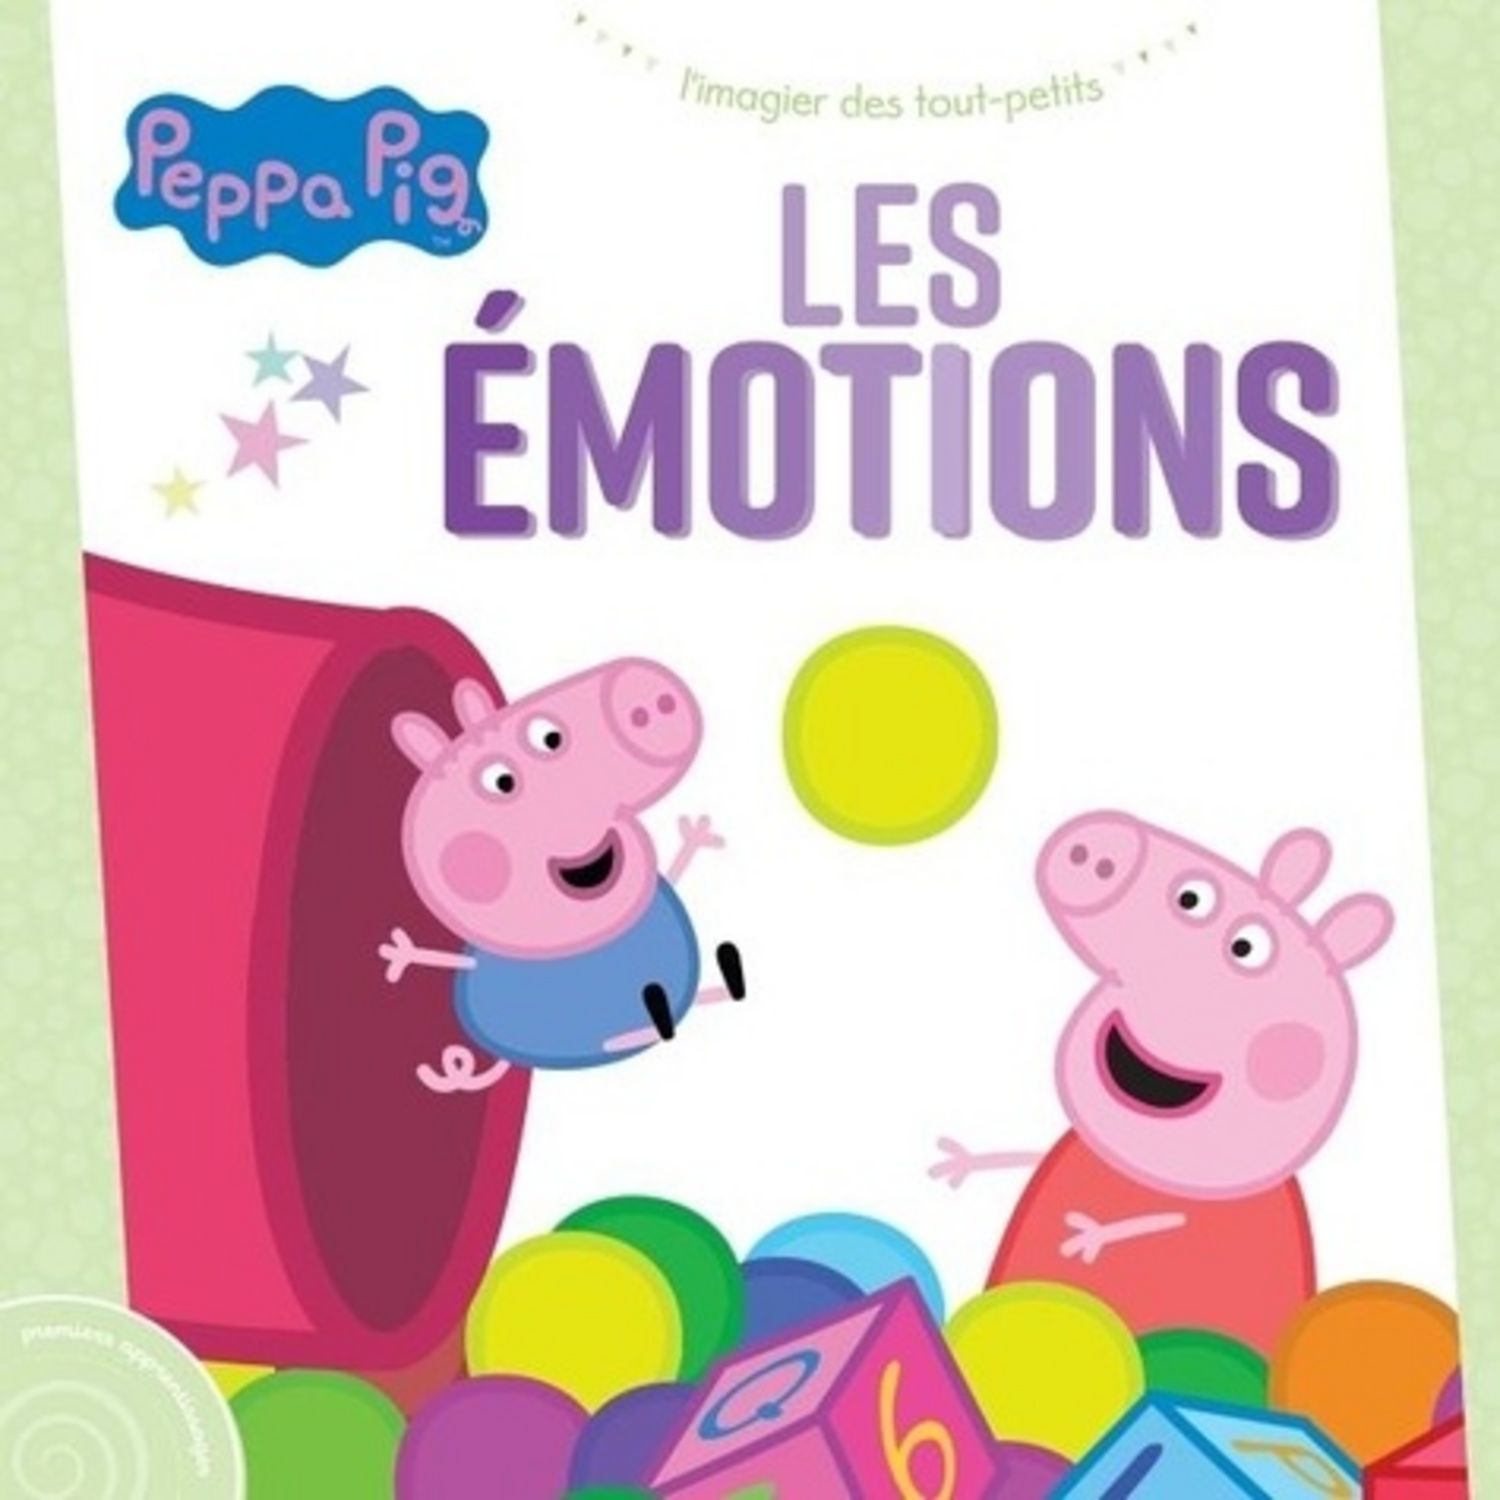 J'apprends avec peppa pig - le grand livre des émotions